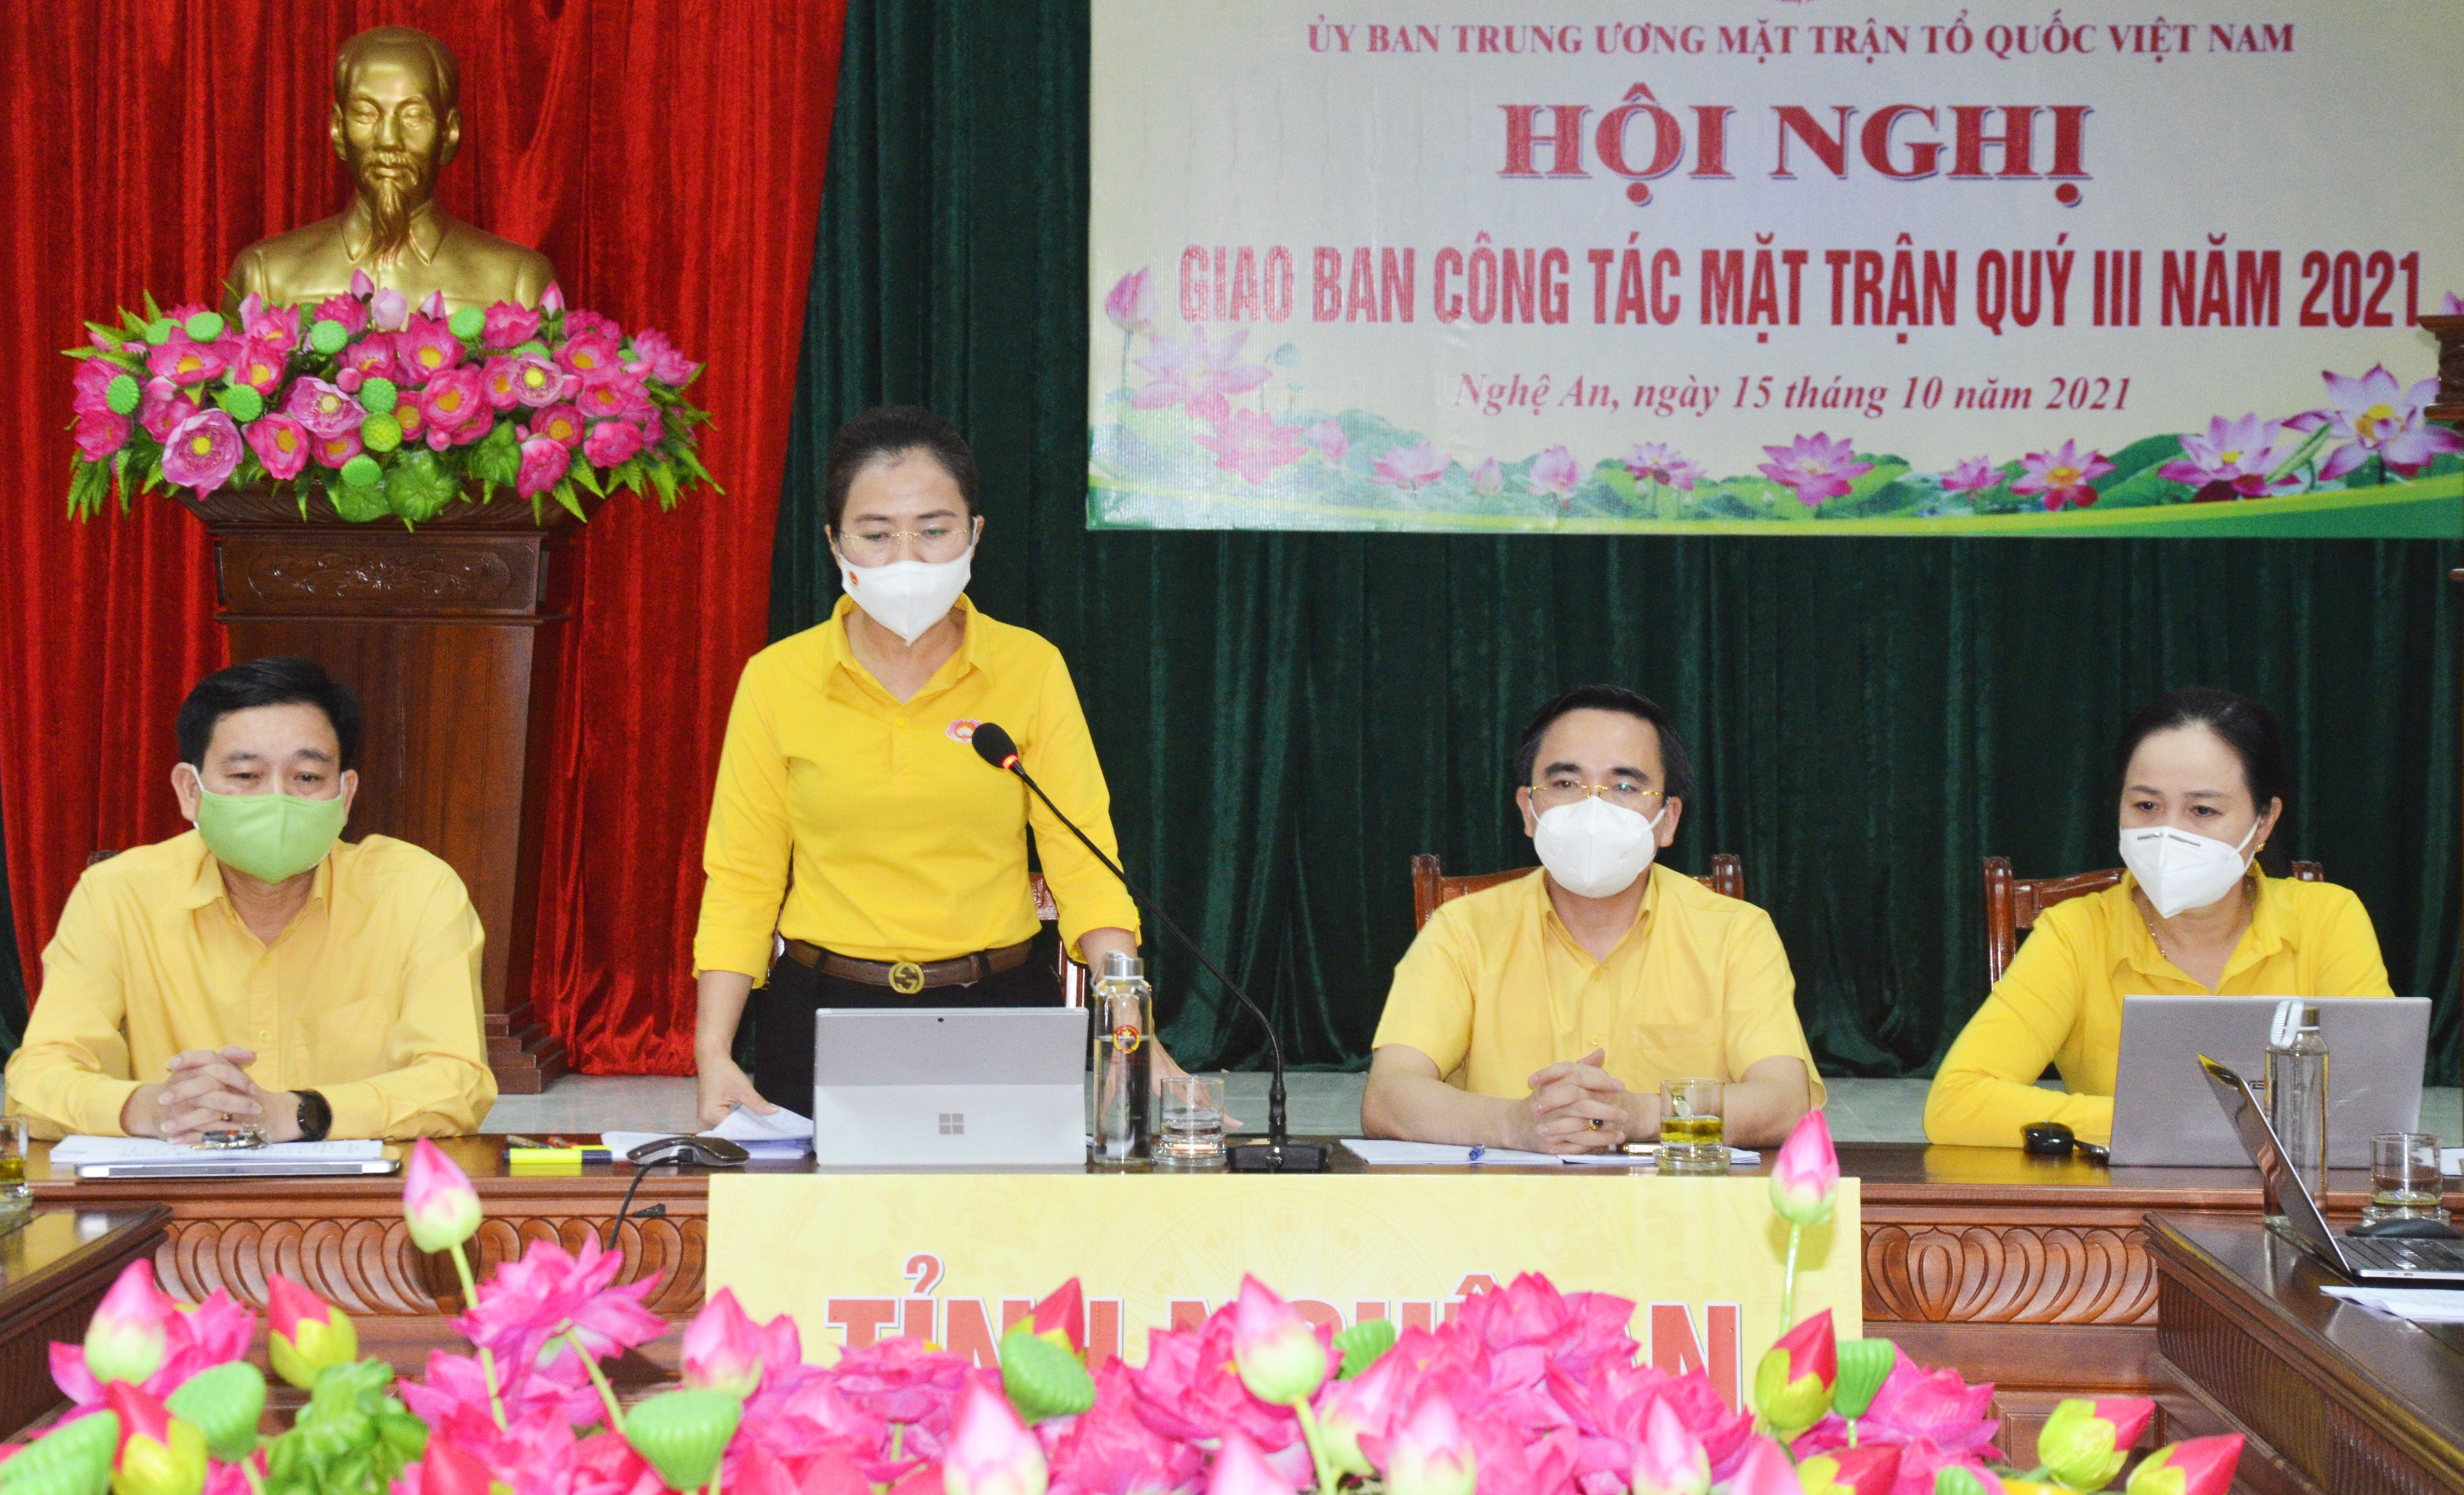 Đồng chí Võ Thị Minh Sinh - Chủ tịch Ủy ban MTTQ tỉnh Nghệ An phát biểu thảo luận tại hội nghị. Ảnh: Thanh Lê